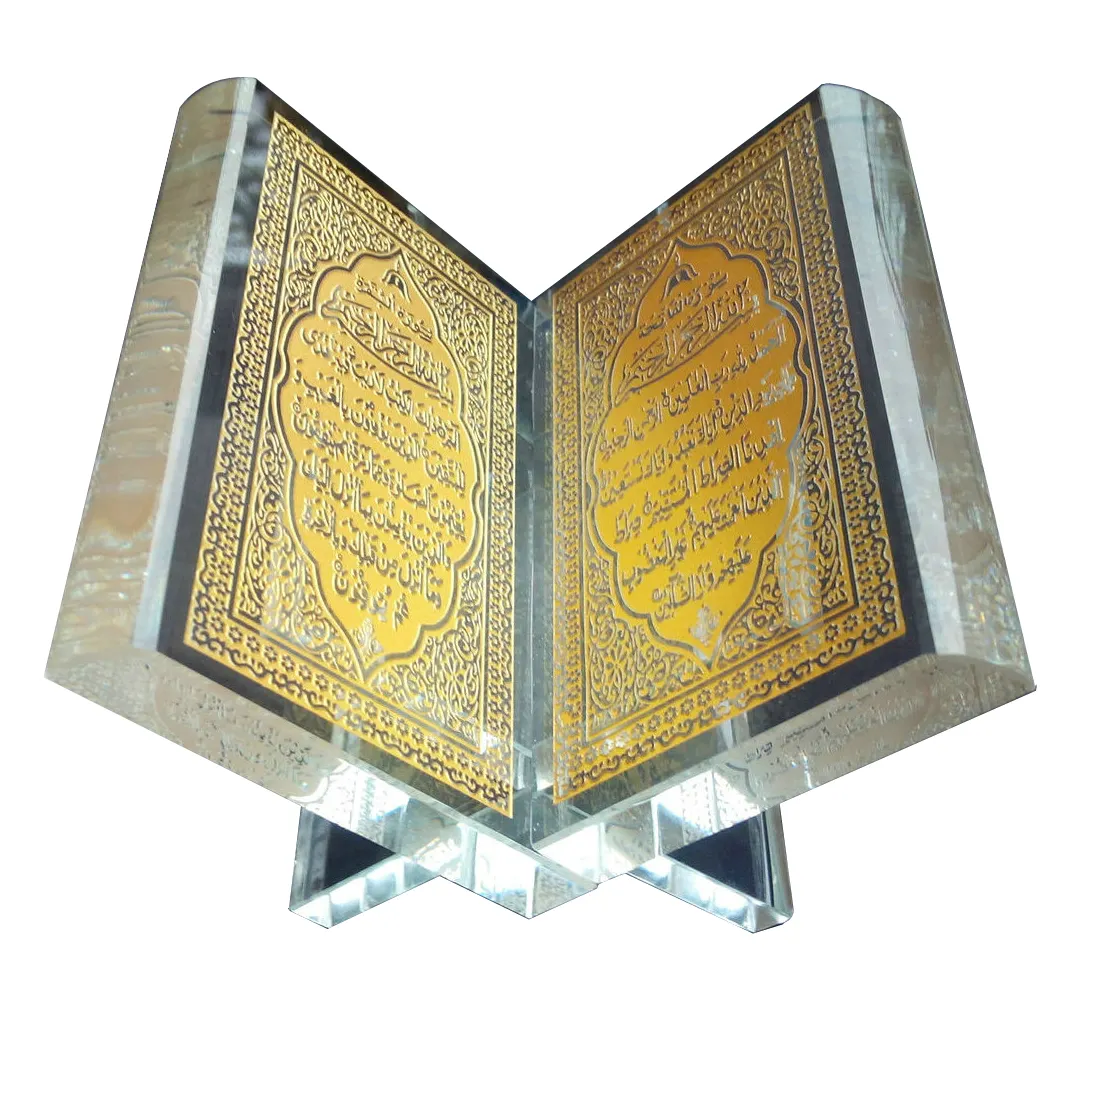 คริสตัลหนังสืออิสลามแกะสลักสีทองของขวัญแต่งงานสำหรับชาวมุสลิมแบบพิเศษของขวัญวันหยุดตามสั่ง